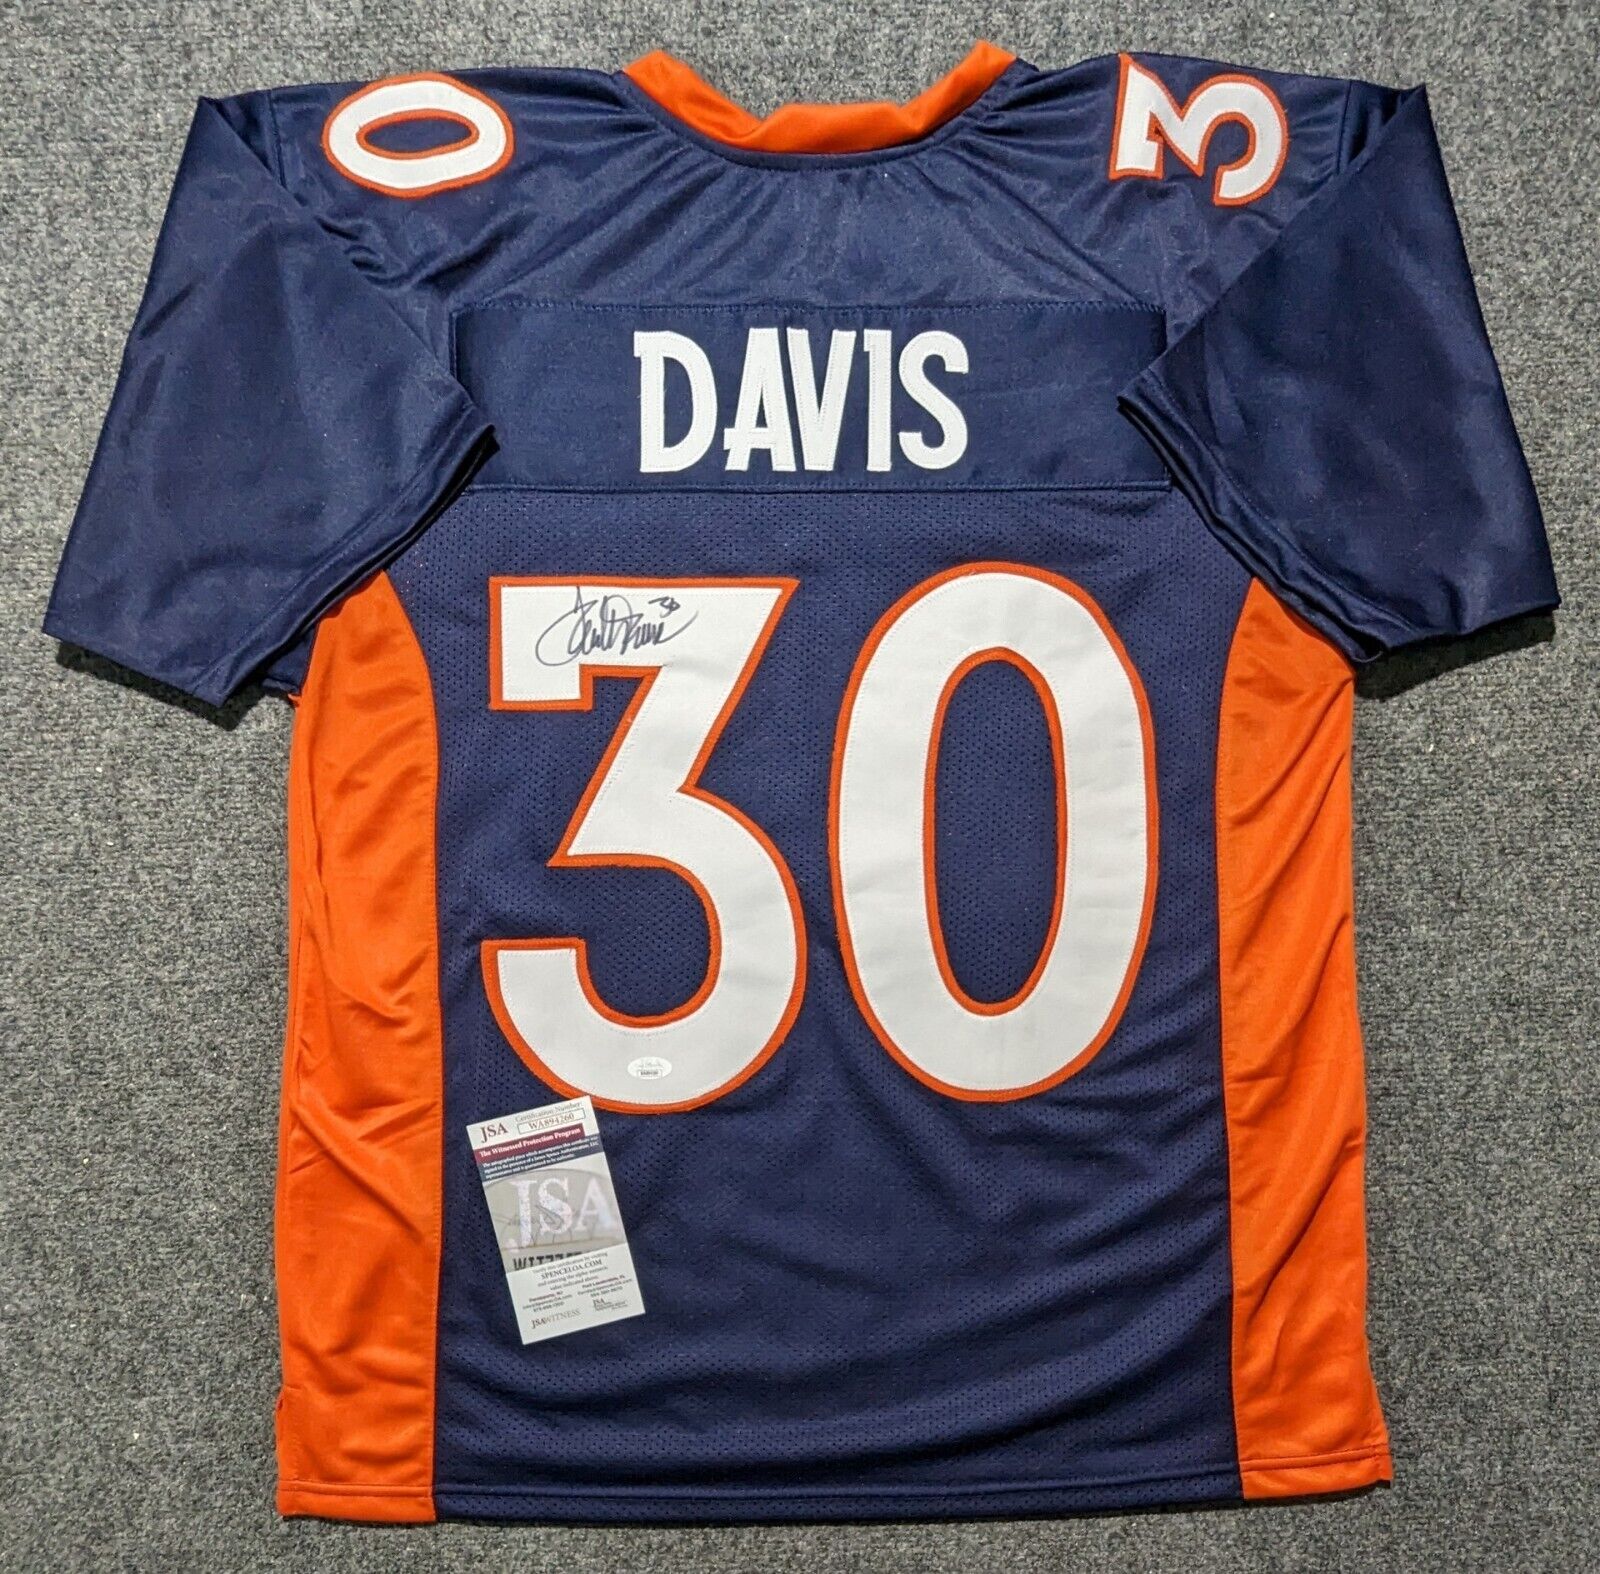 Denver Broncos Terrell Davis Autographed Signed Jersey Jsa Coa